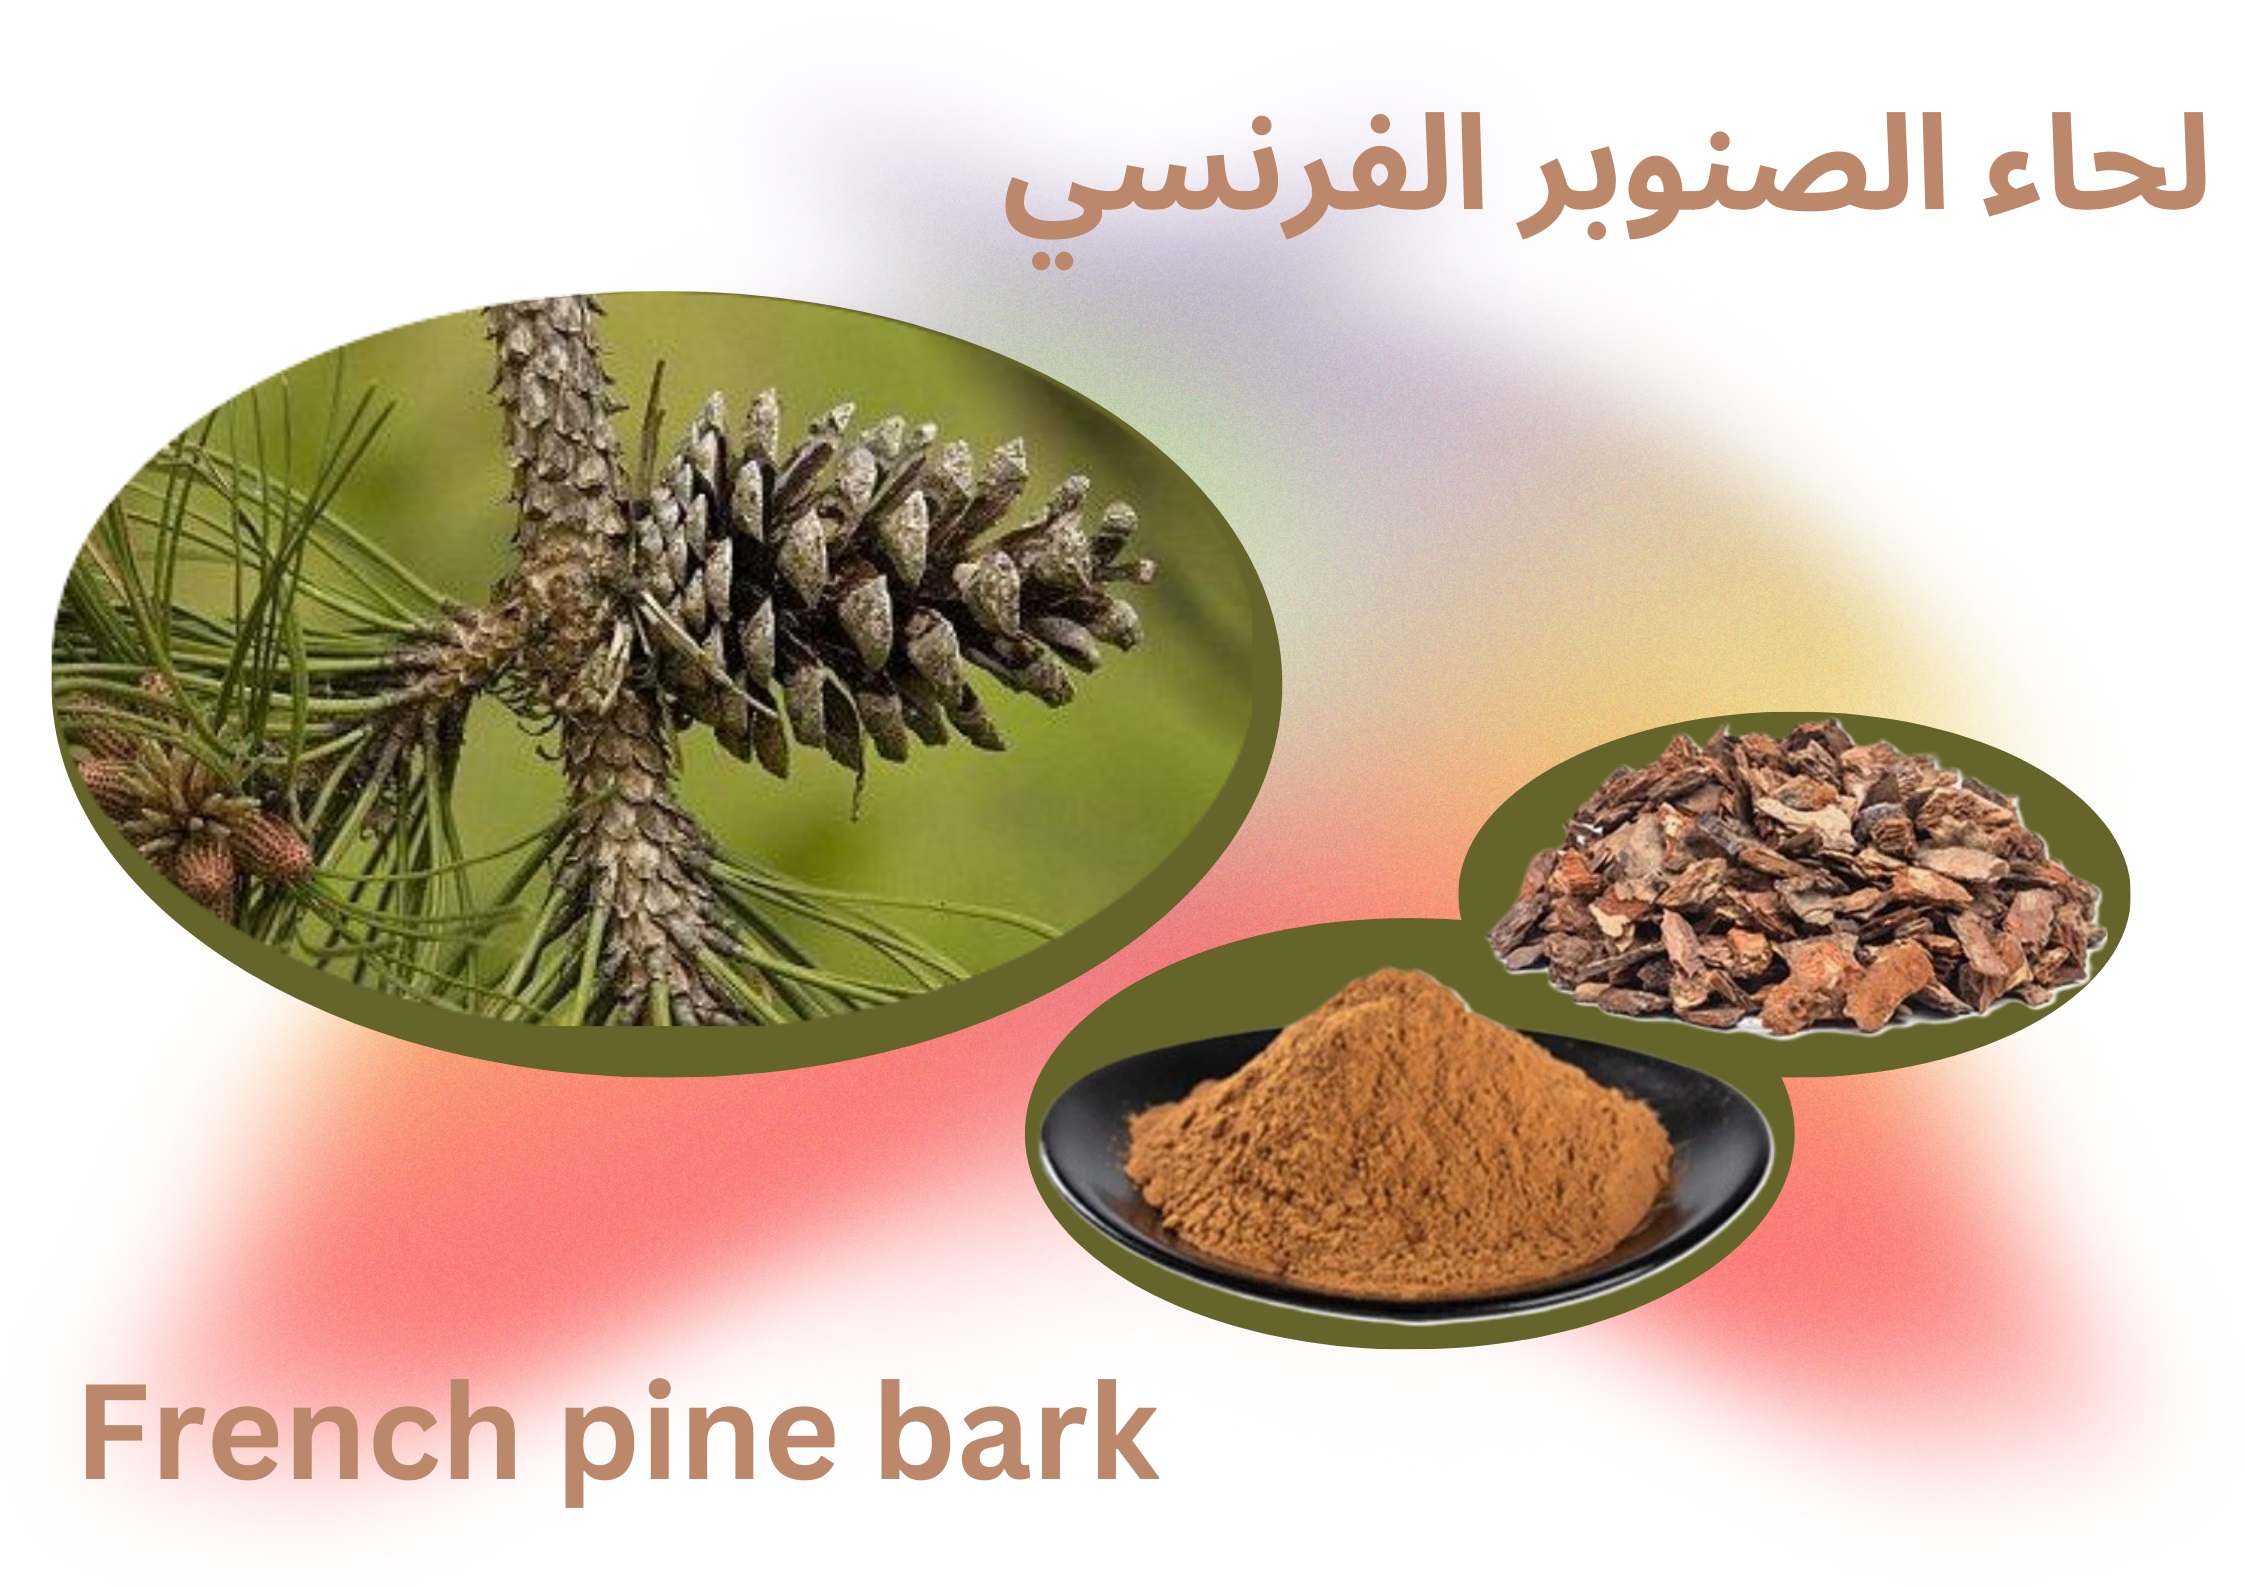 لحاء الصنوبر الفرنسي French pine bark	